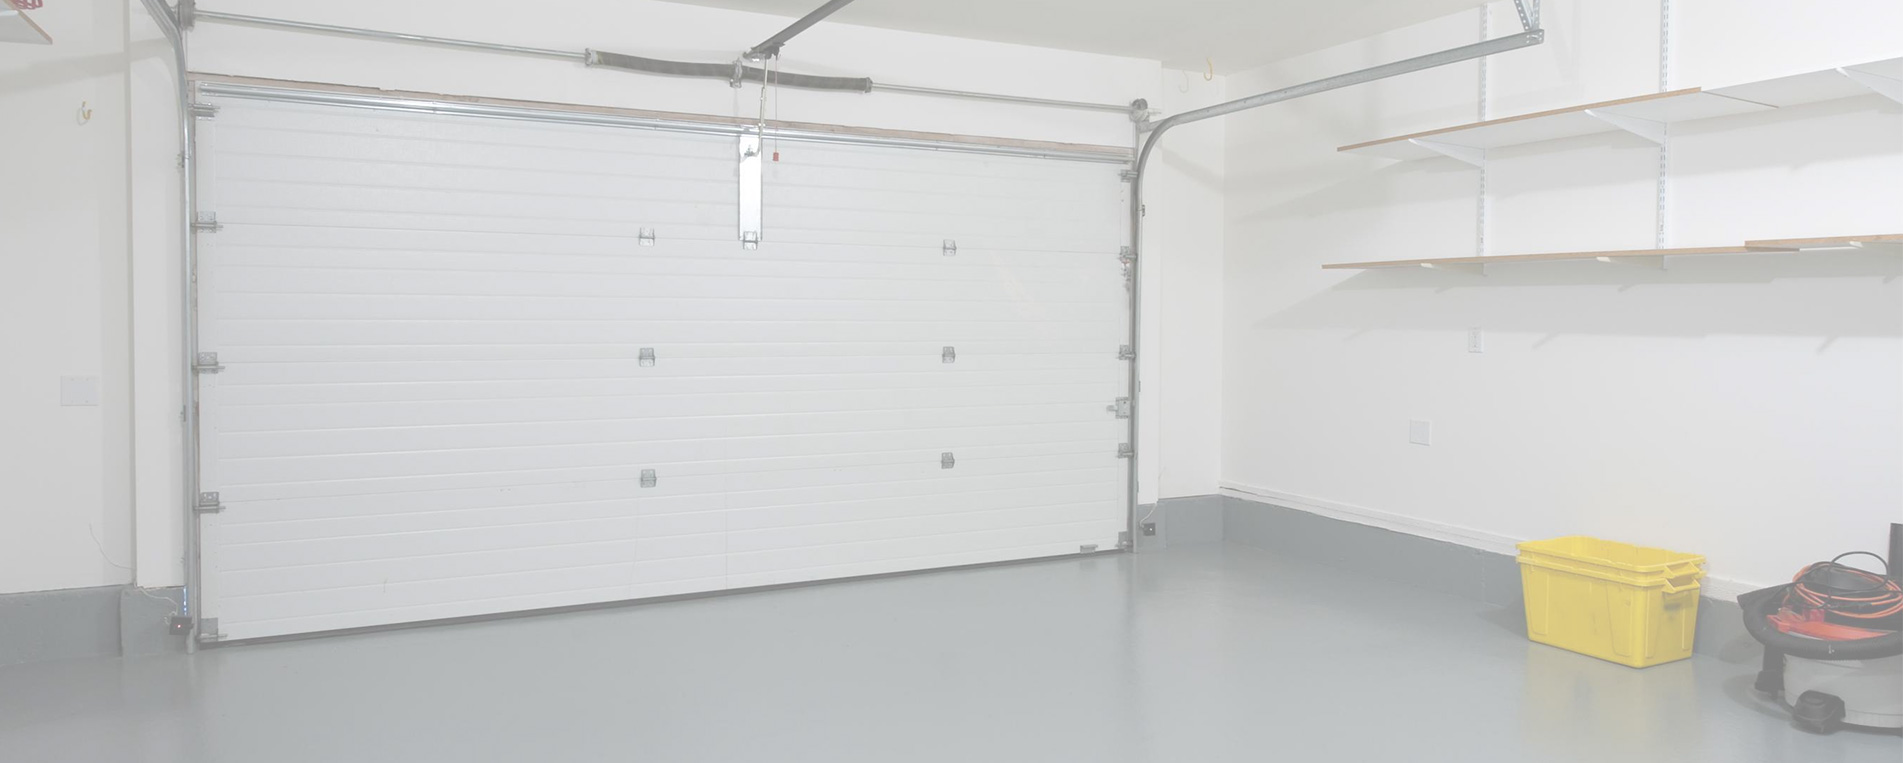 New Garage Door Installation In Maplewood